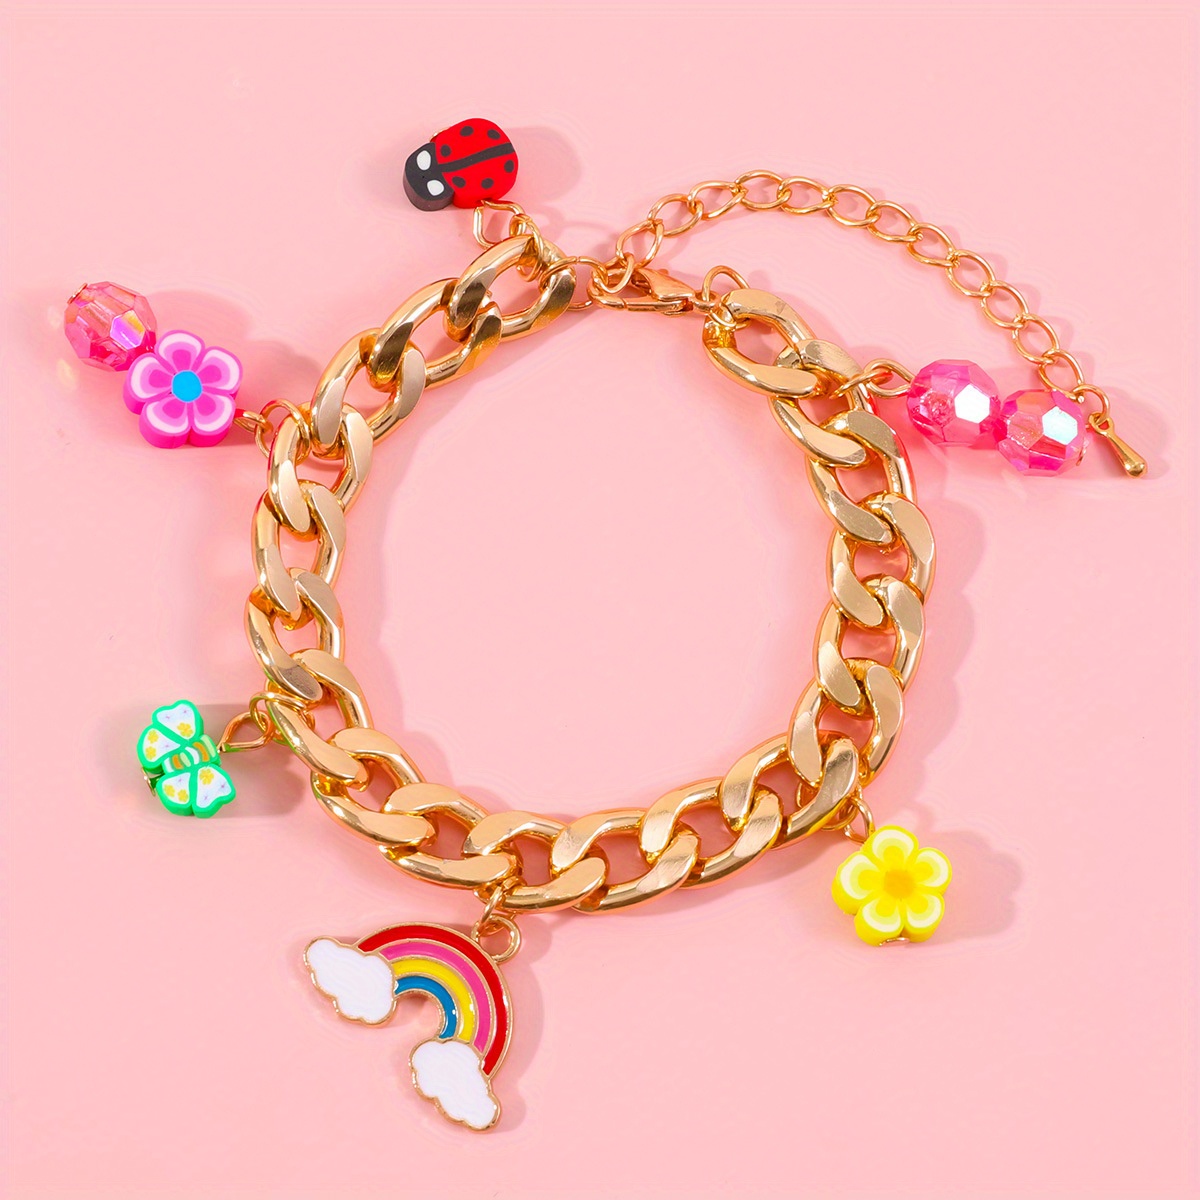 Loisirs Creatifs, Kit de fabrication de bracelet avec Pendentifs Charme  Chaînes Perles Cadeau d'anniversaire pour Filles enfants